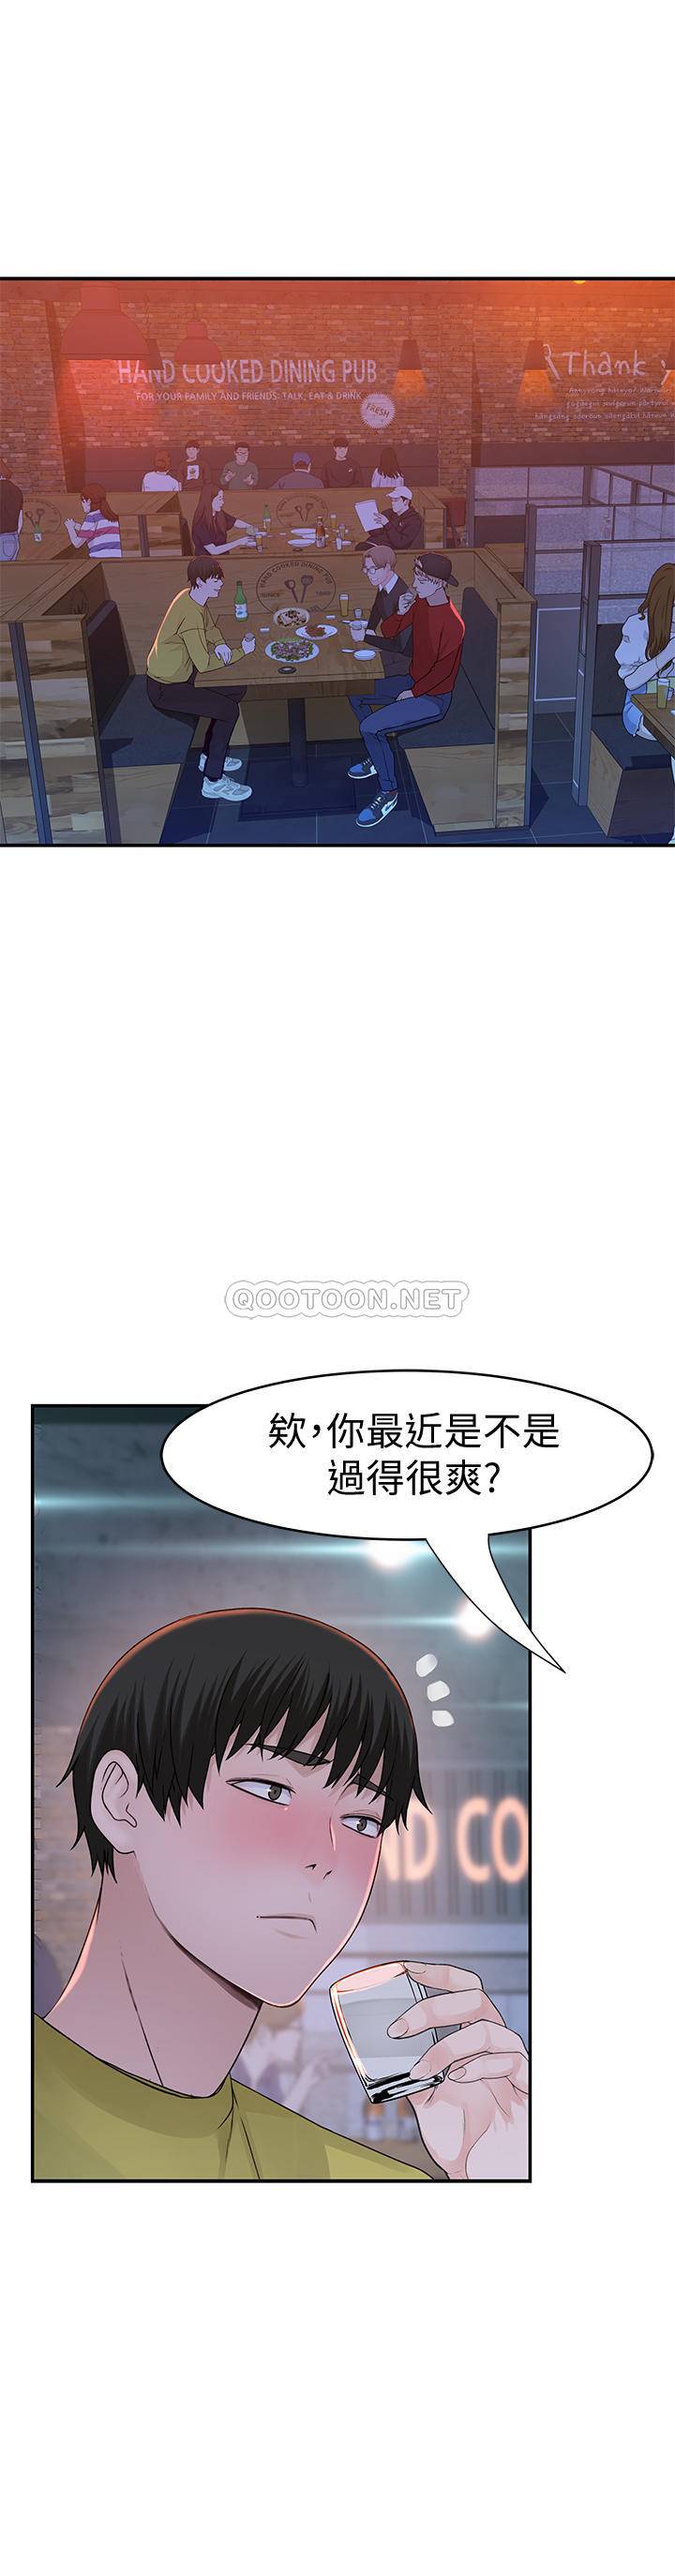 韩国污漫画 我們的非常關系 第50话-回归单身的江晓筑 15